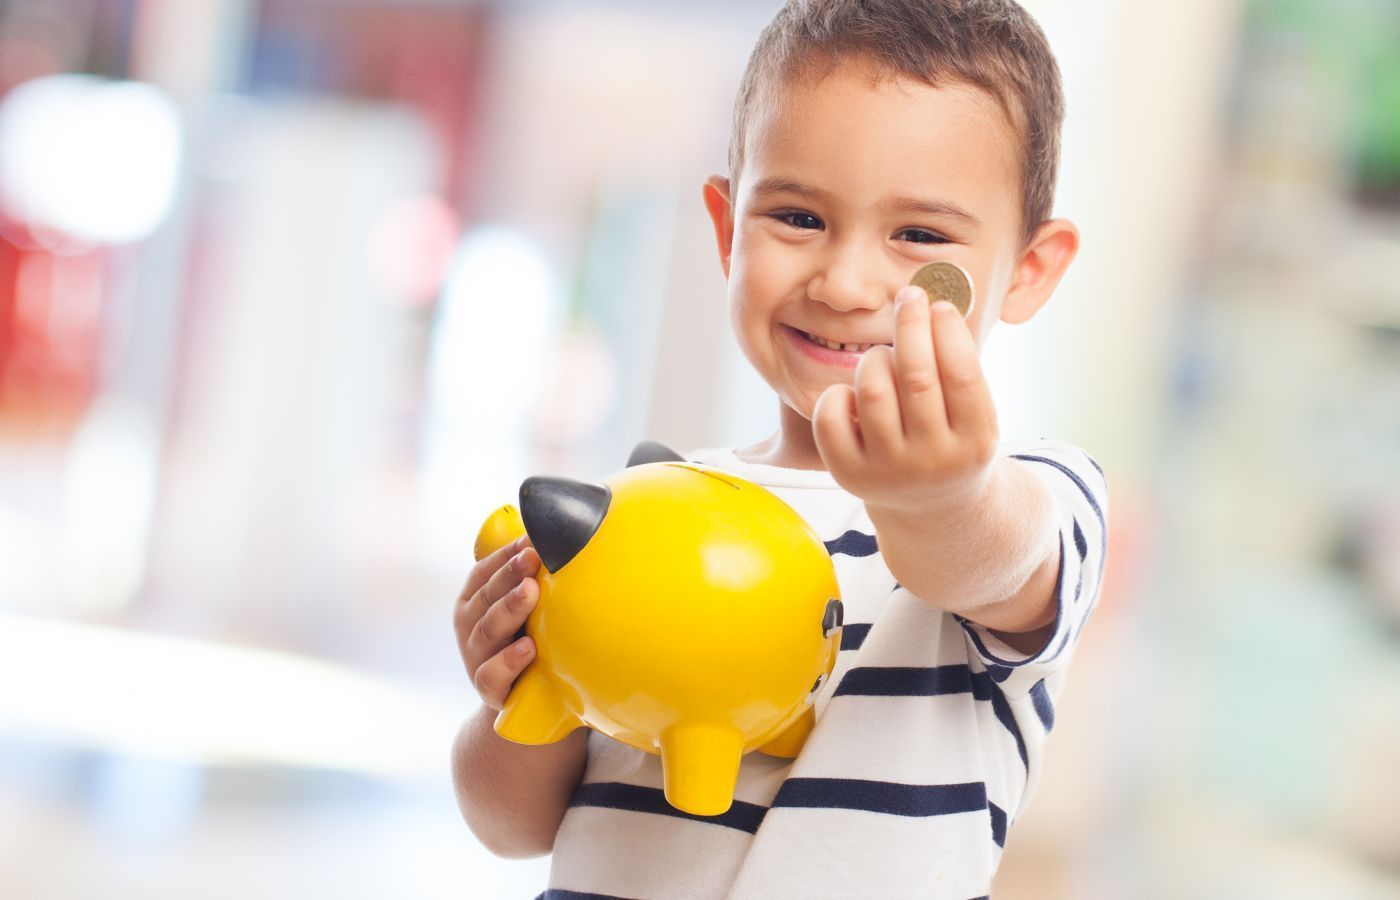 Să dăm sau nu bani copilului? 5 sfaturi de la Adrian Asoltanie, trainer financiar